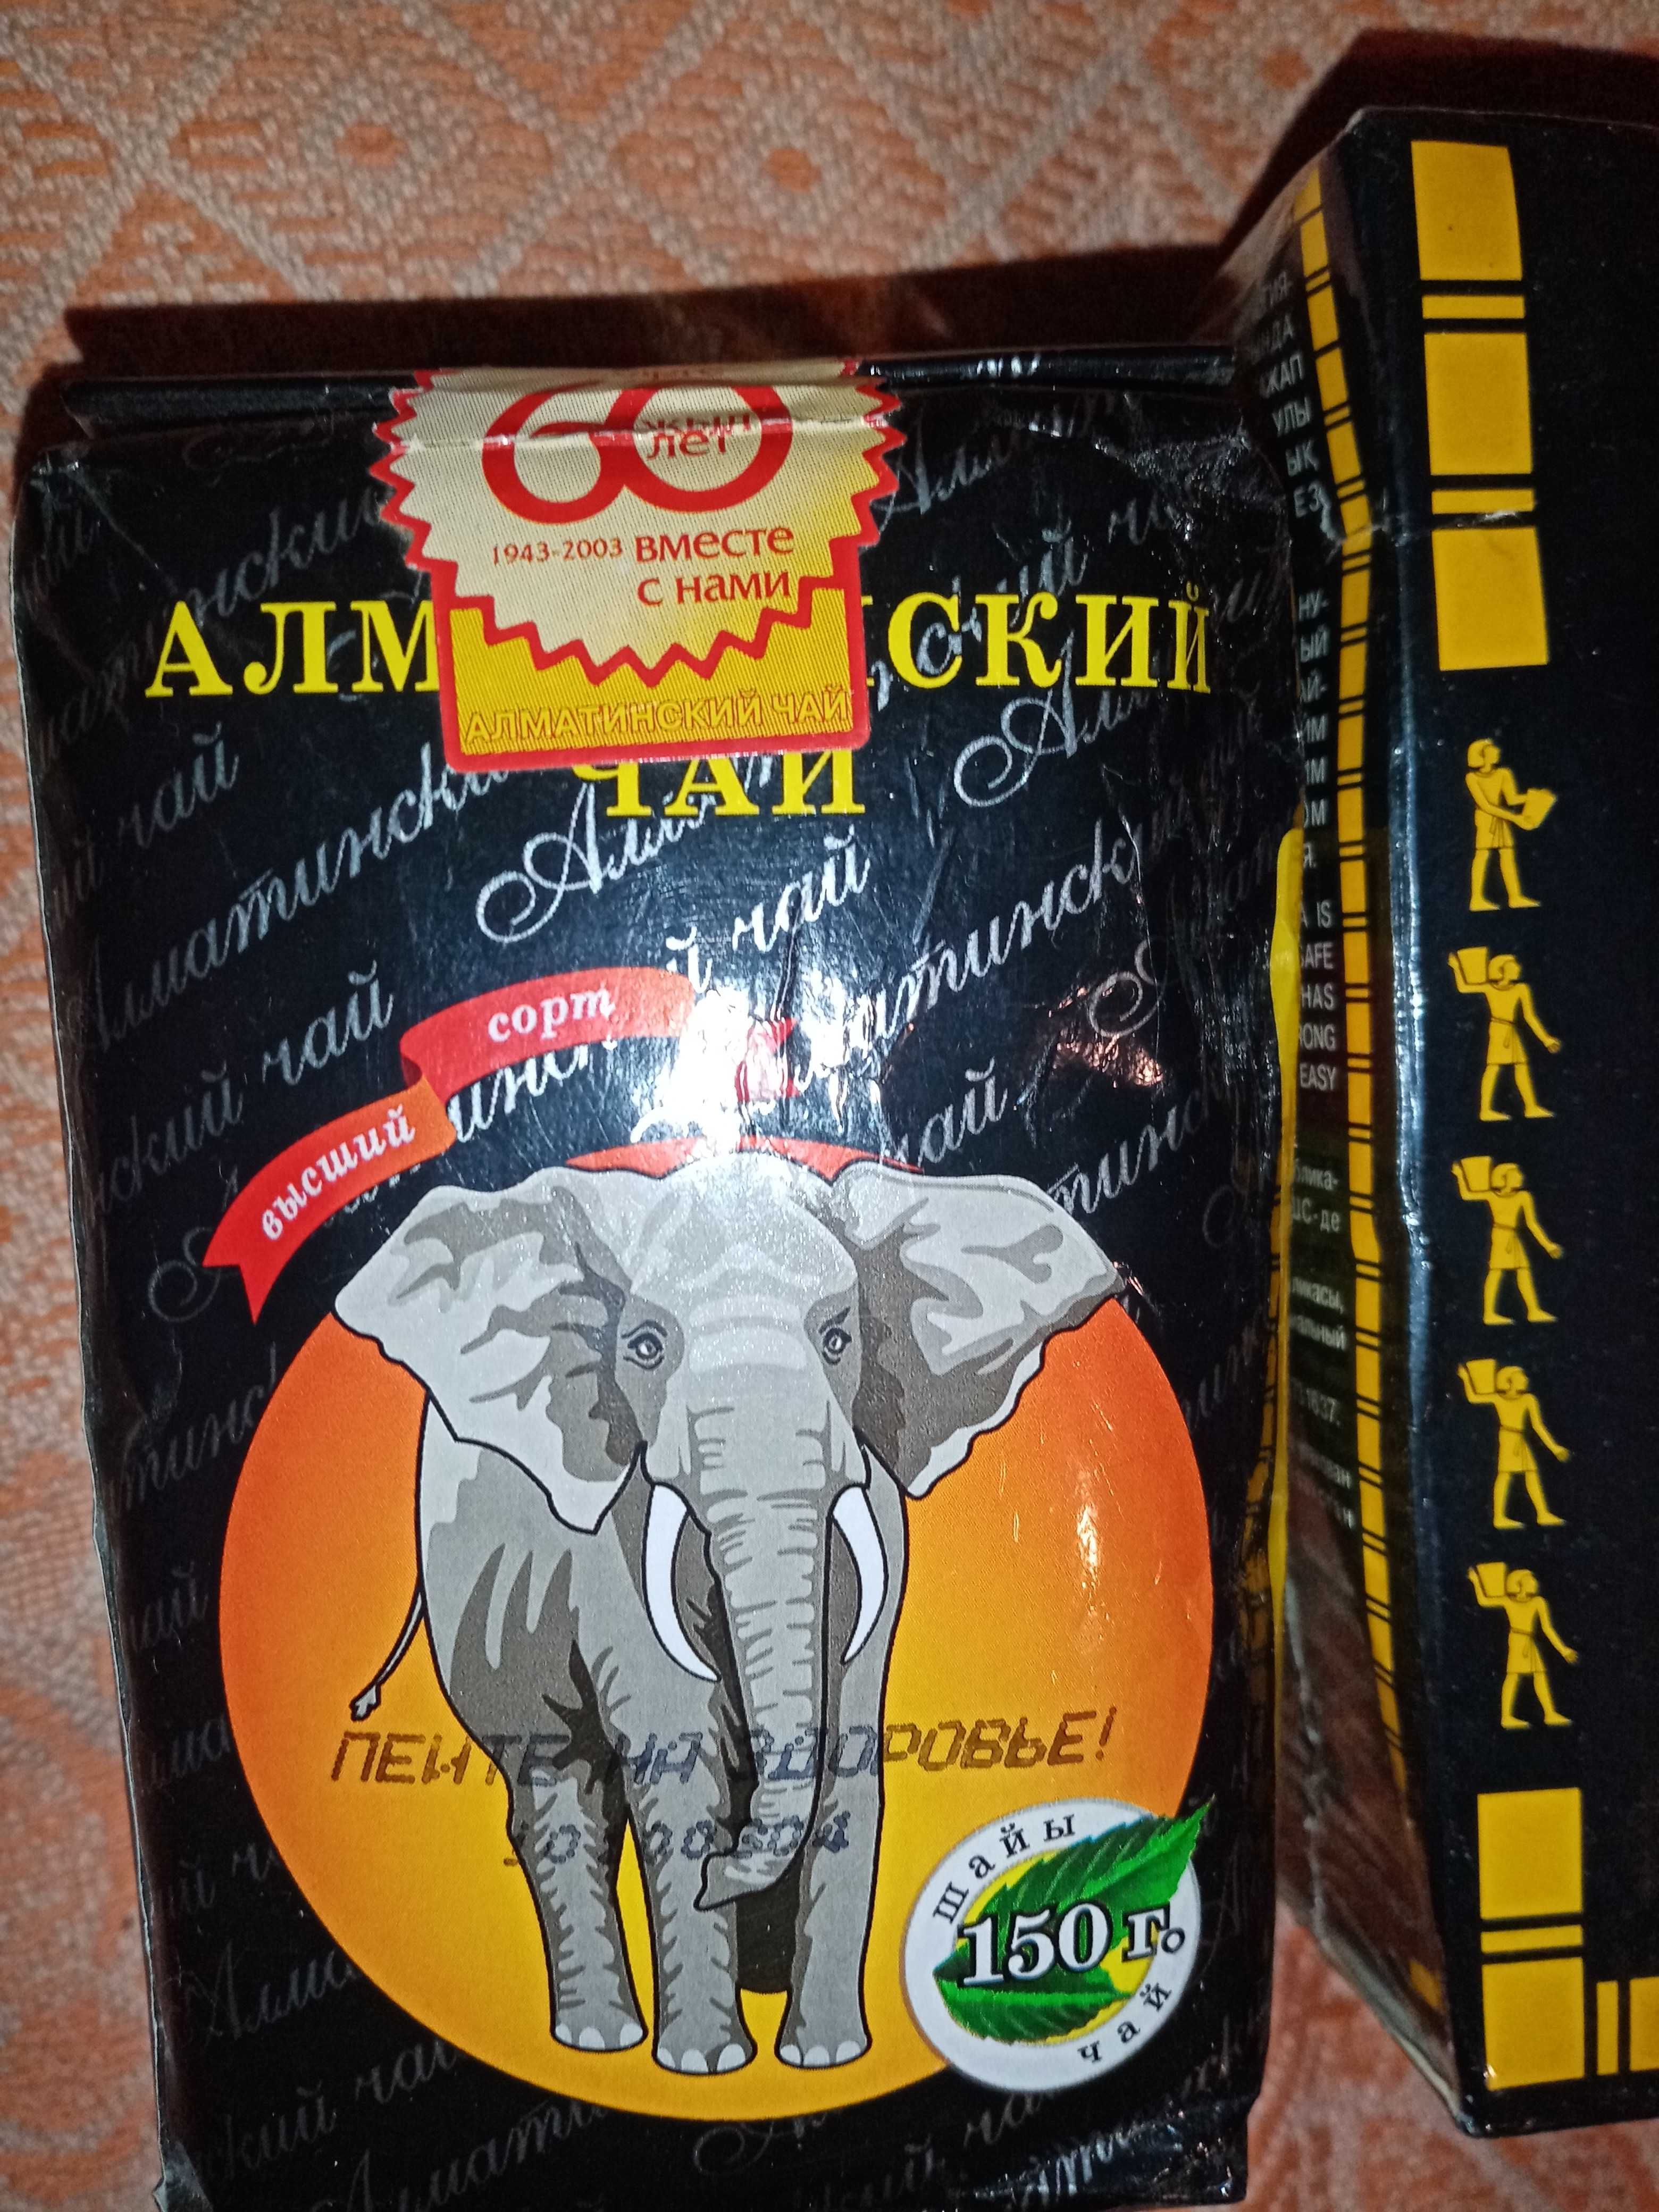 Чай казахстанский жемчужина Нила и Алмаатинский чай 2003год